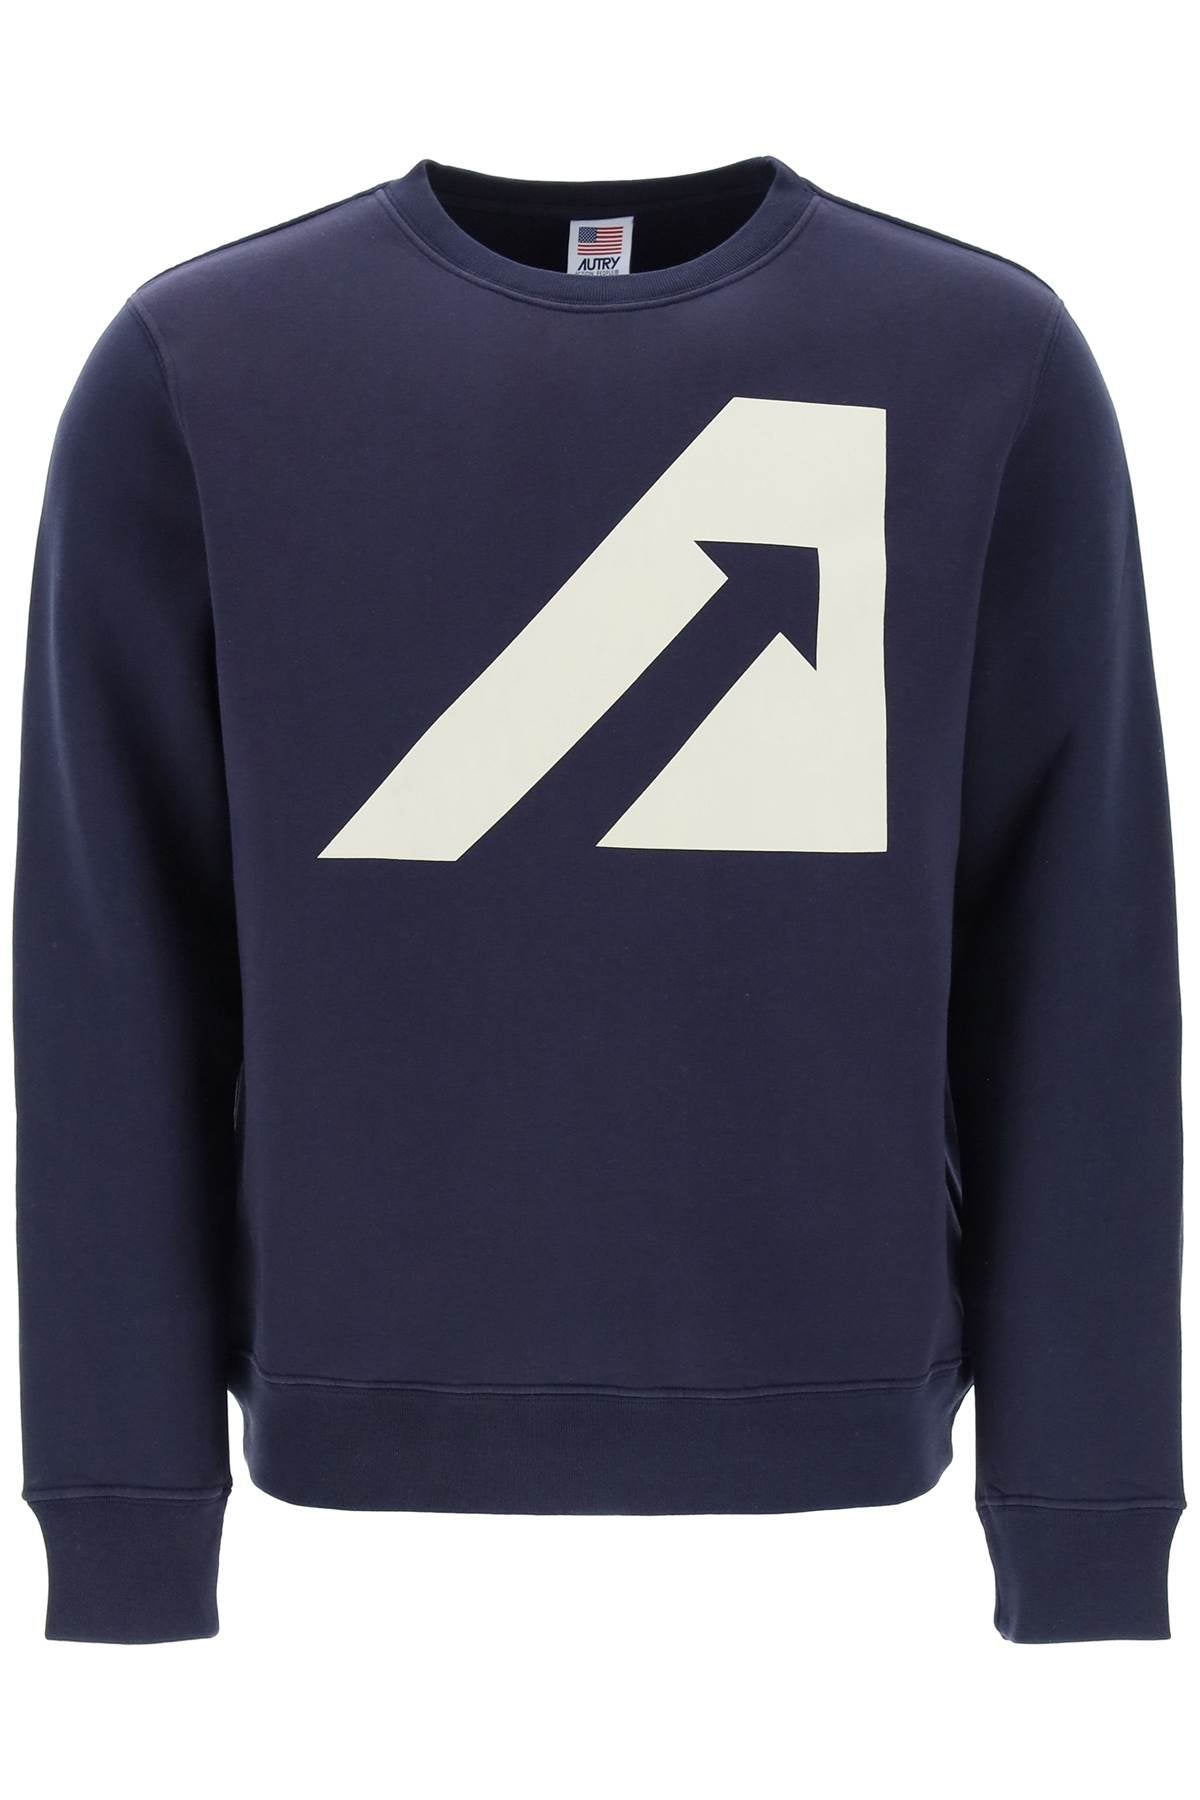 Autry crew-neck sweatshirt with logo print-0